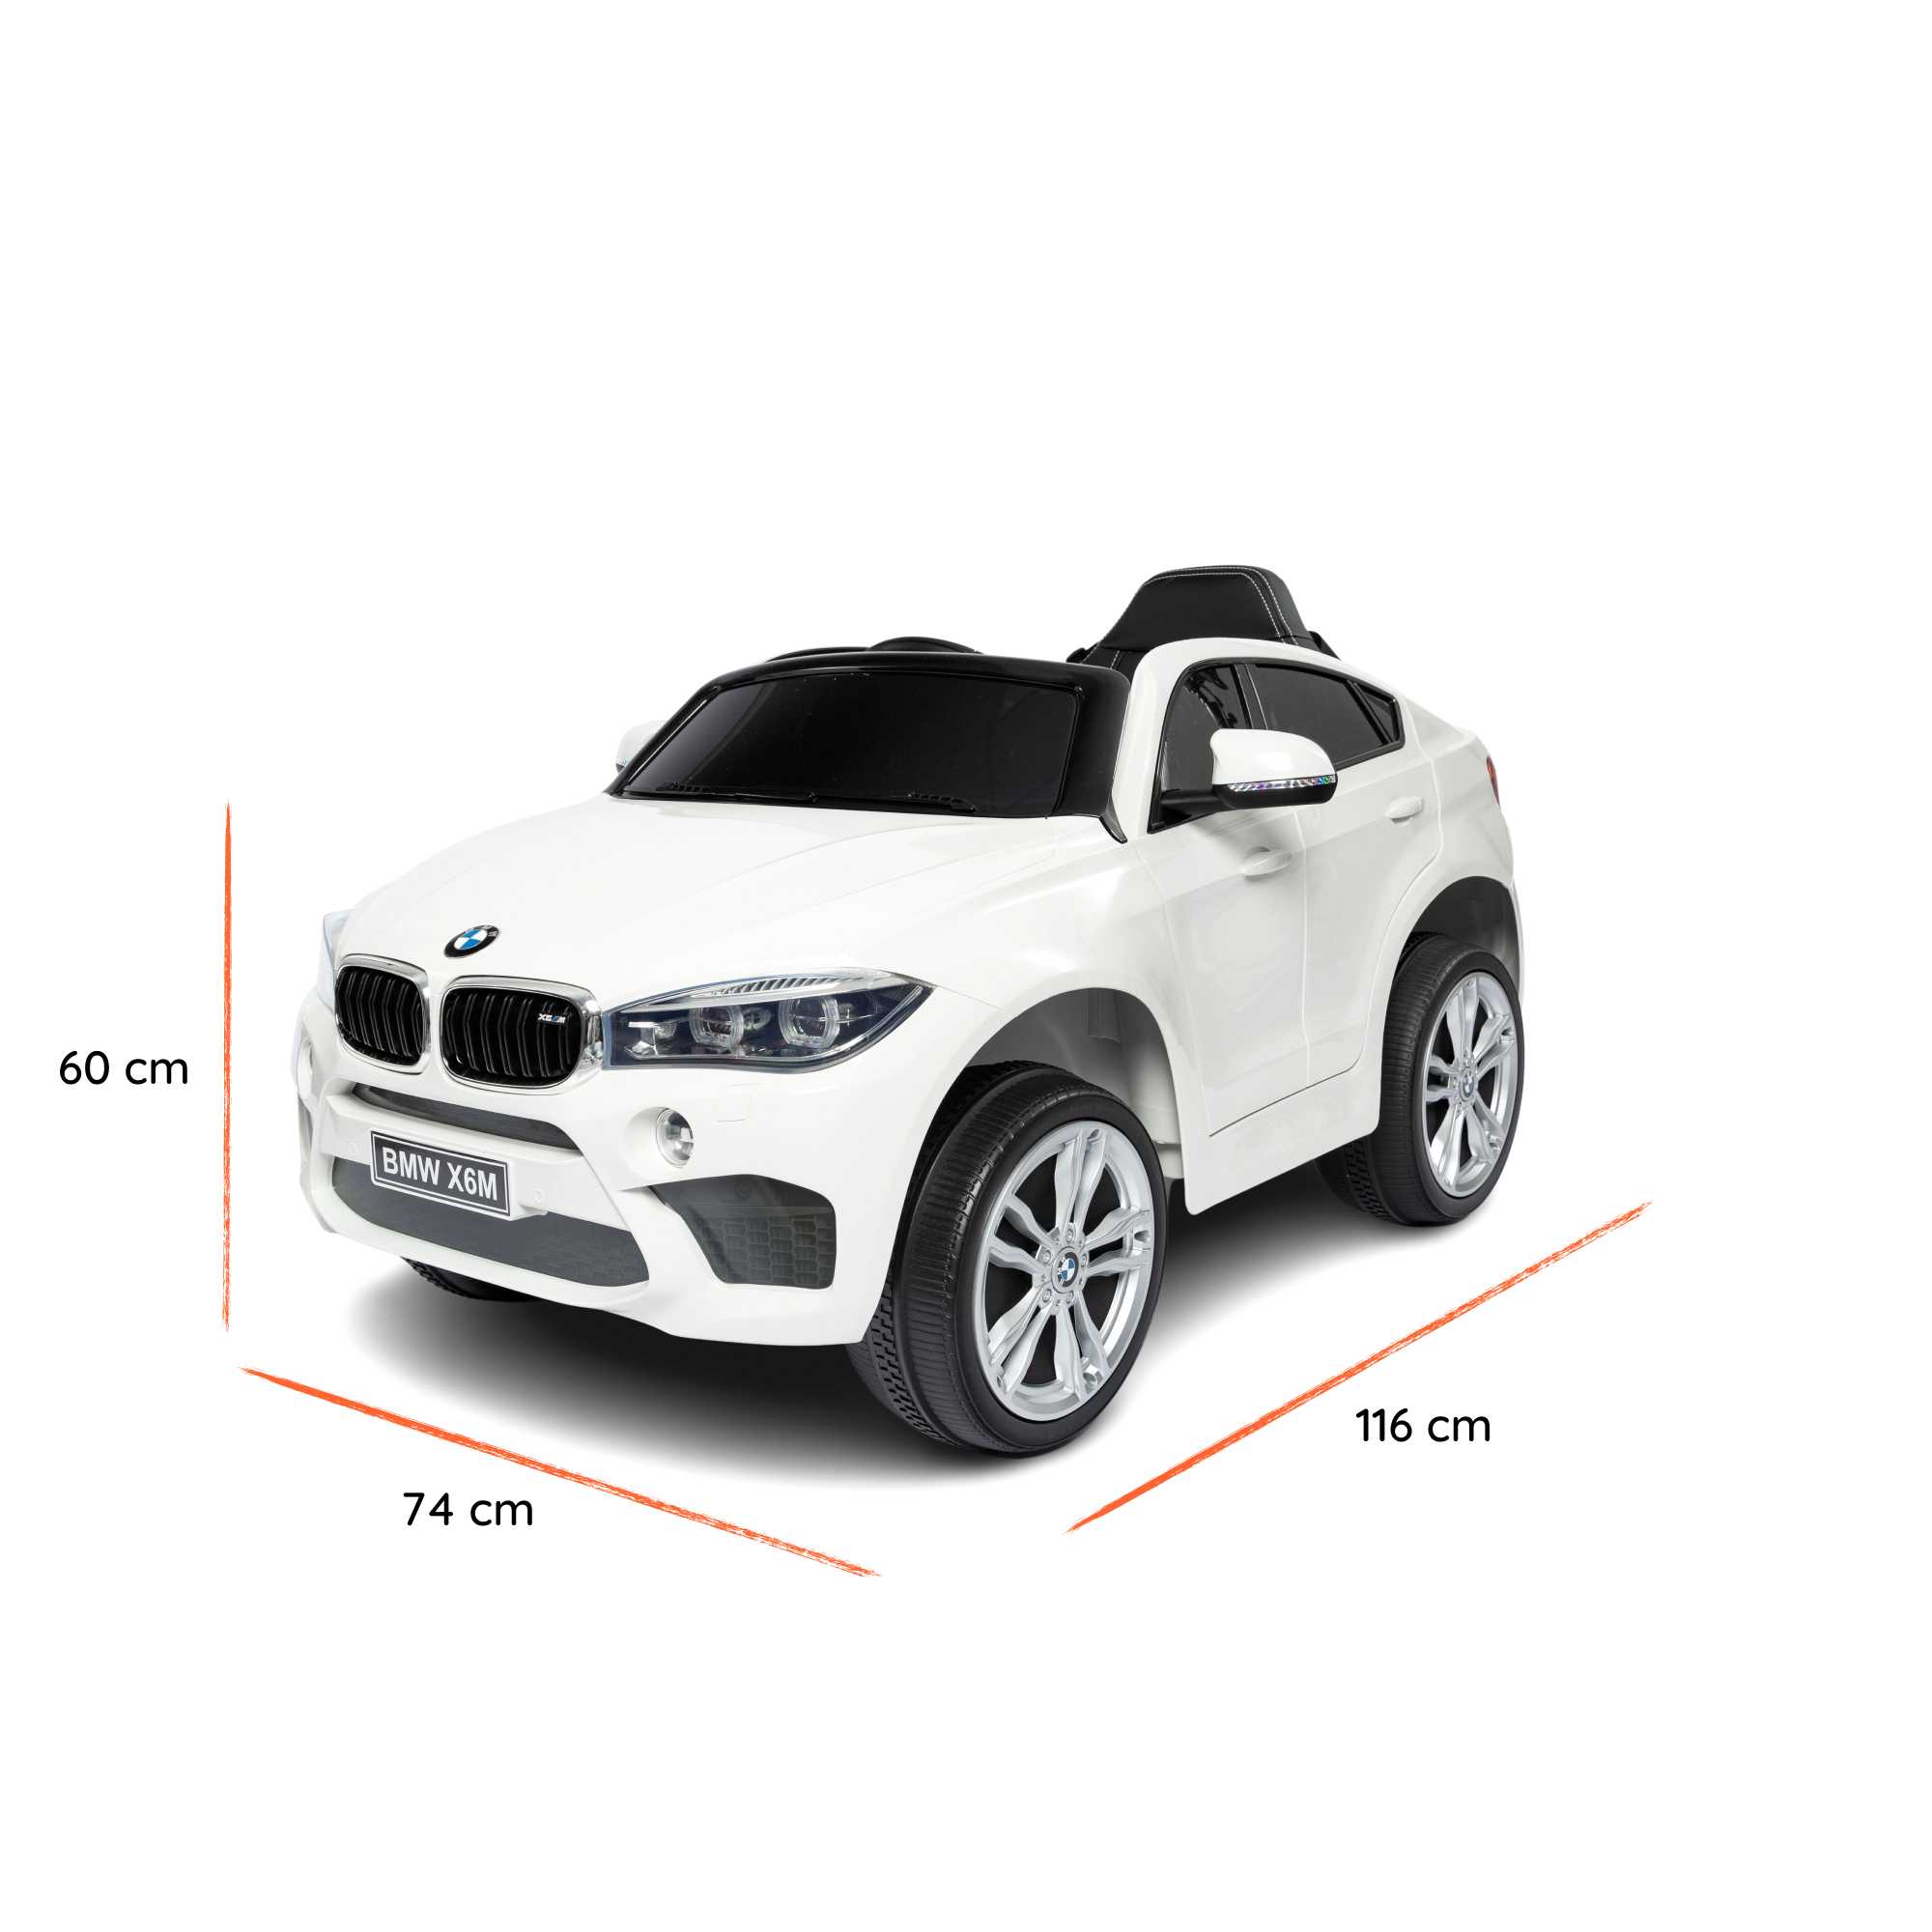 BMW X6 M bianca dimensioni